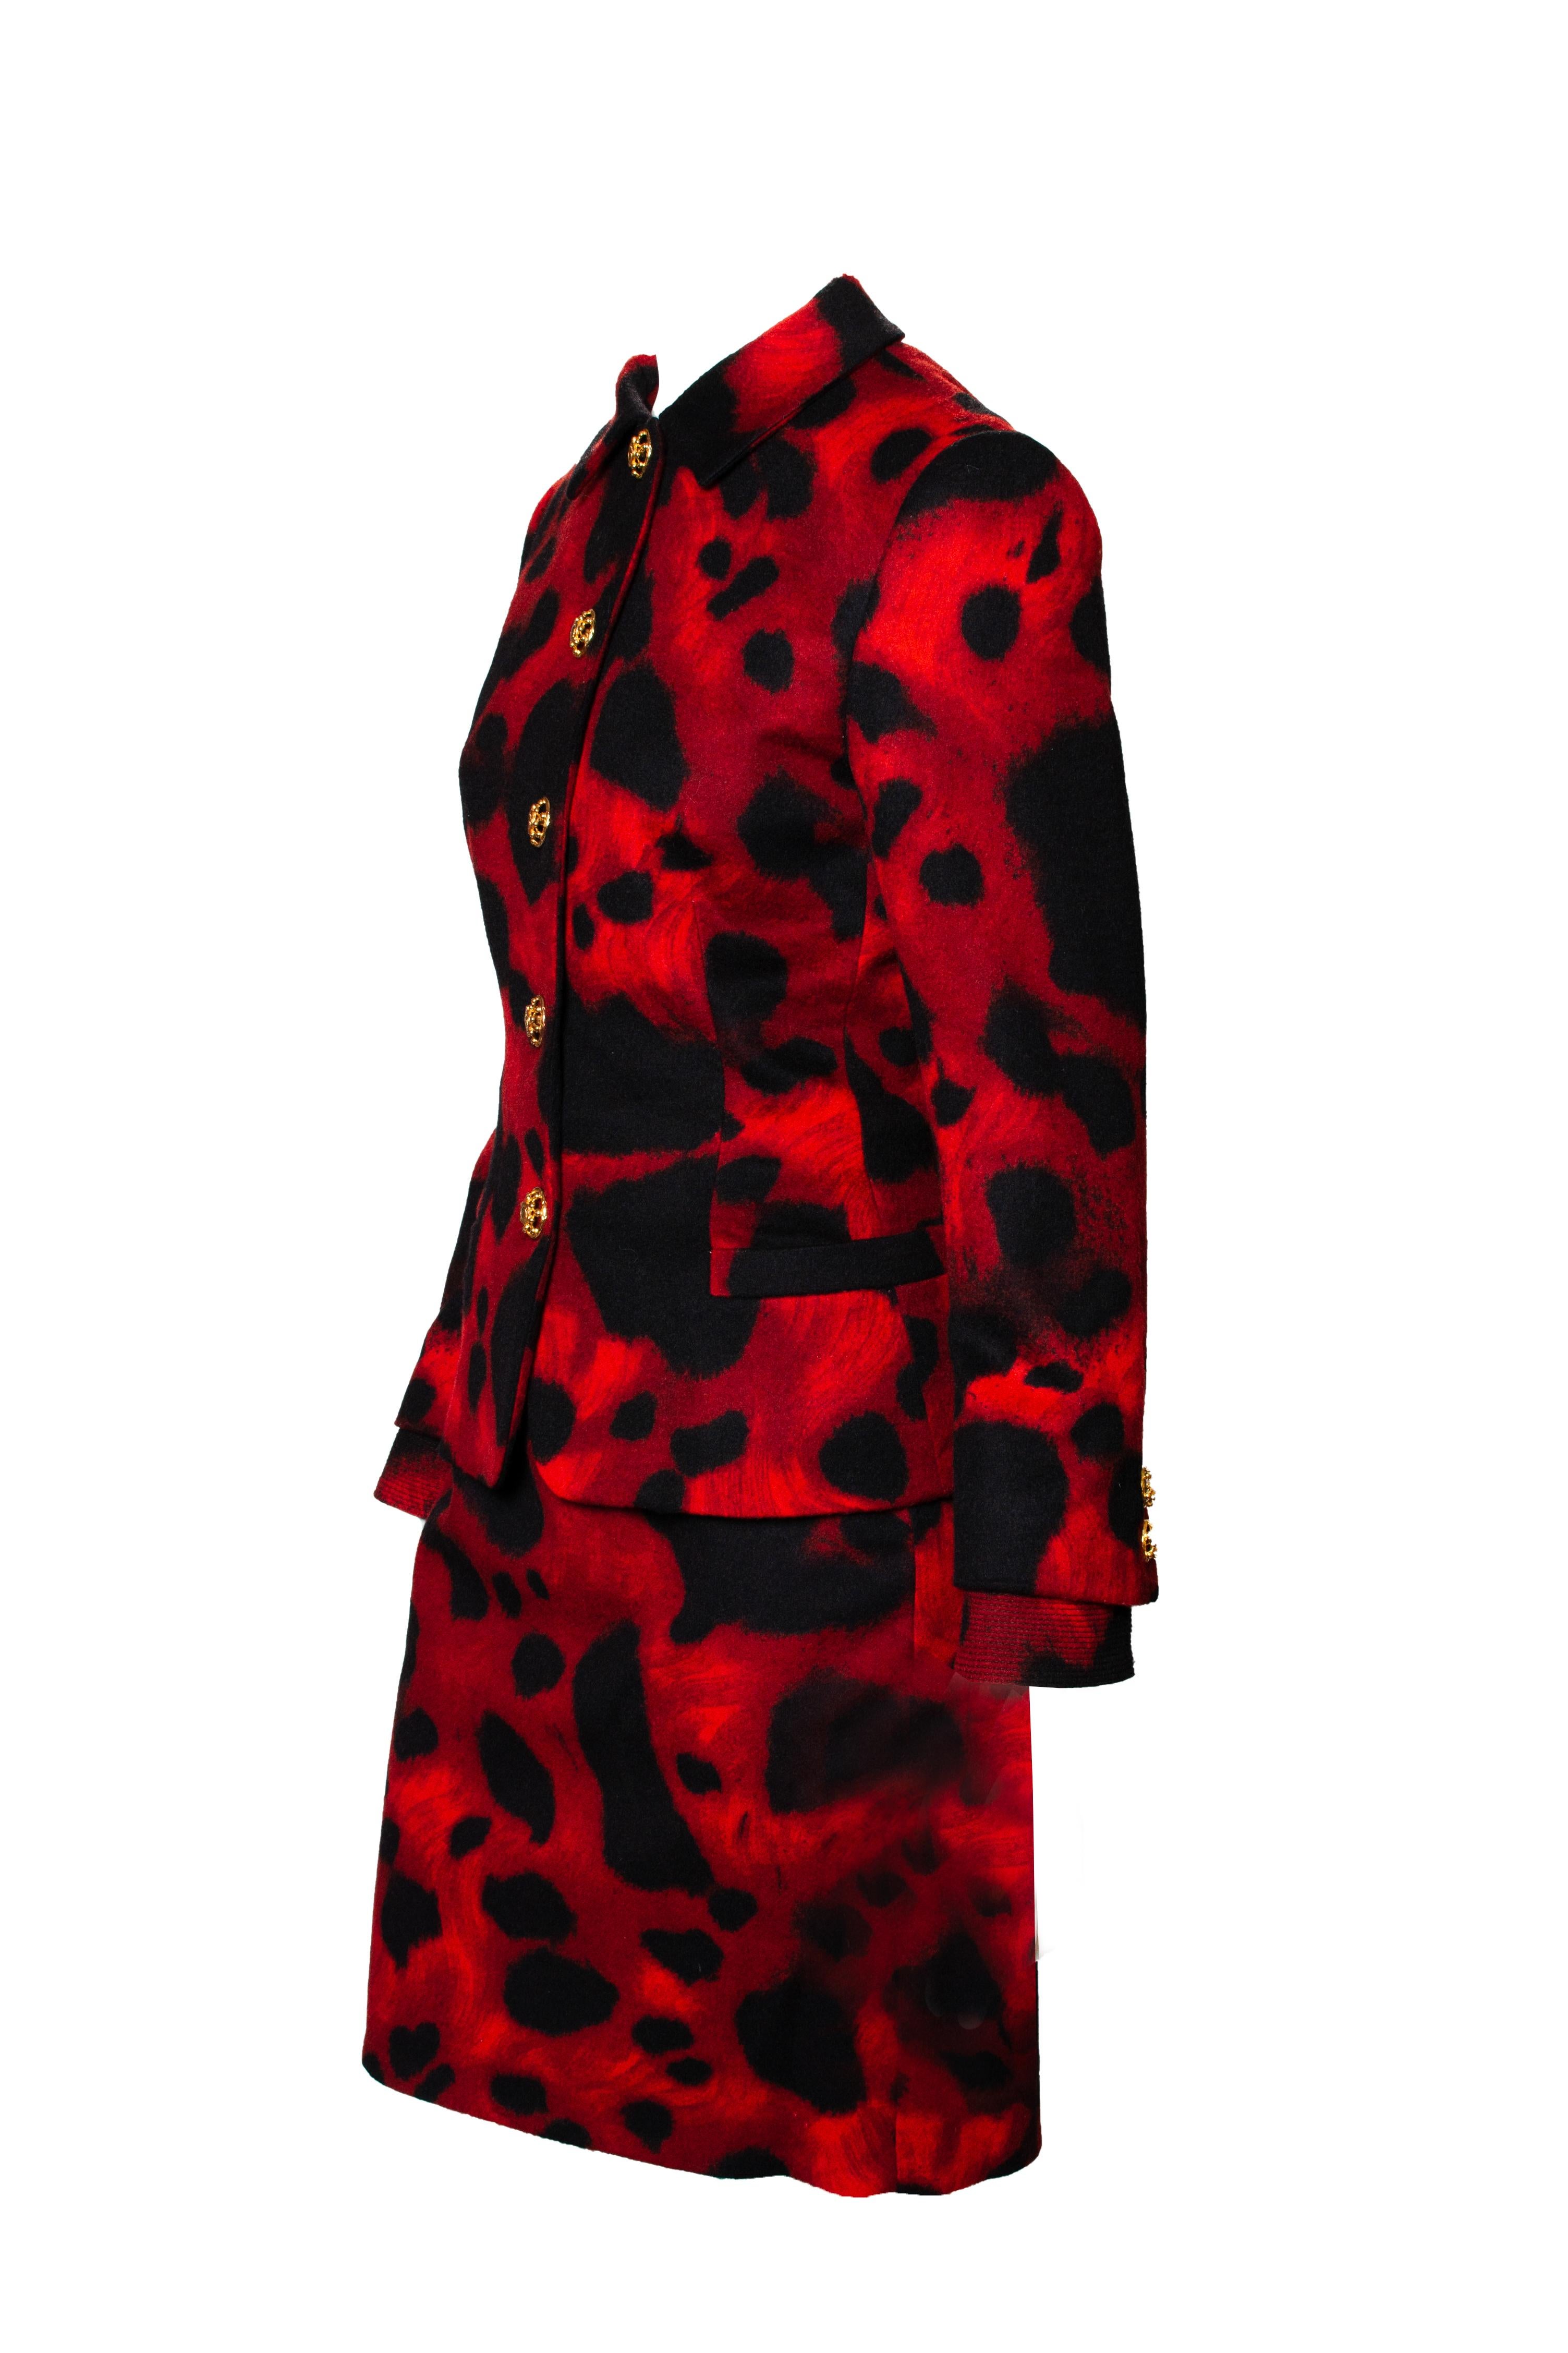 Dieser klassische rote Rock mit Leopardenmuster stammt aus der Herbst/Winter-Kollektion 1992 von Gianni Versace, entworfen von Gianni Versace. Wenn das kein Poweranzug ist, dann wissen wir nicht, was es ist. Dieses Set besteht aus einer farbenfrohen